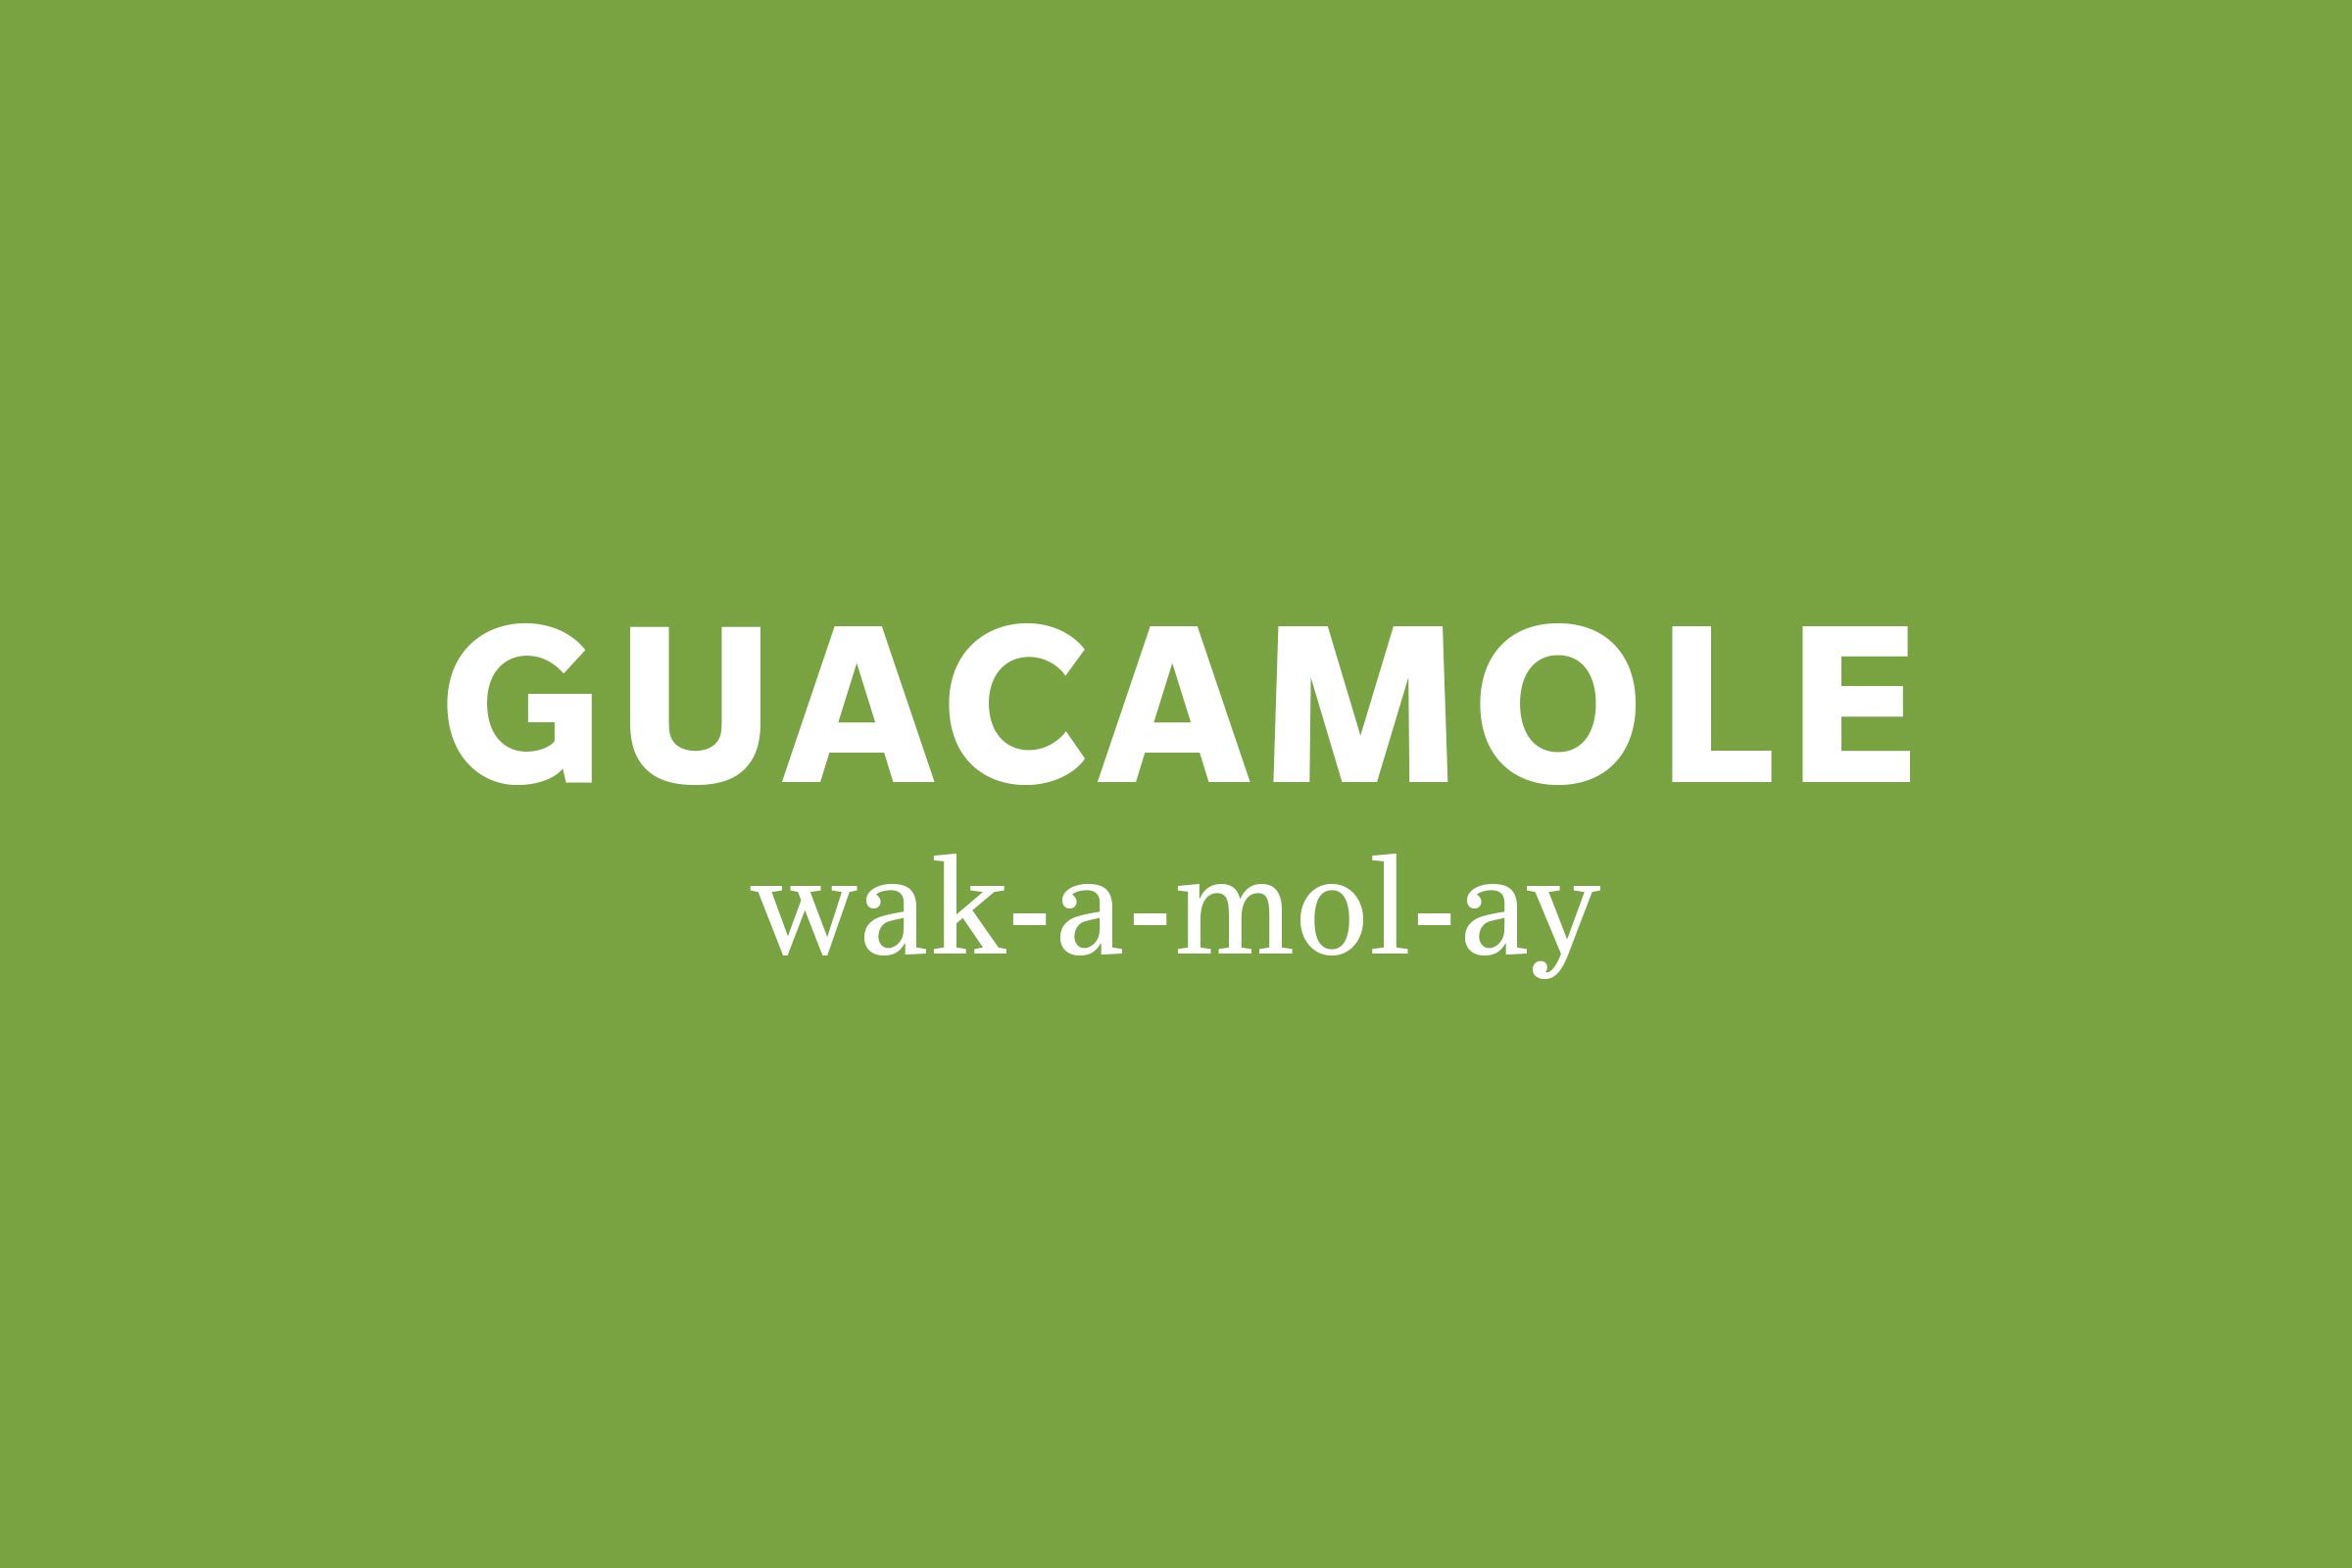 guacamole pronunciation